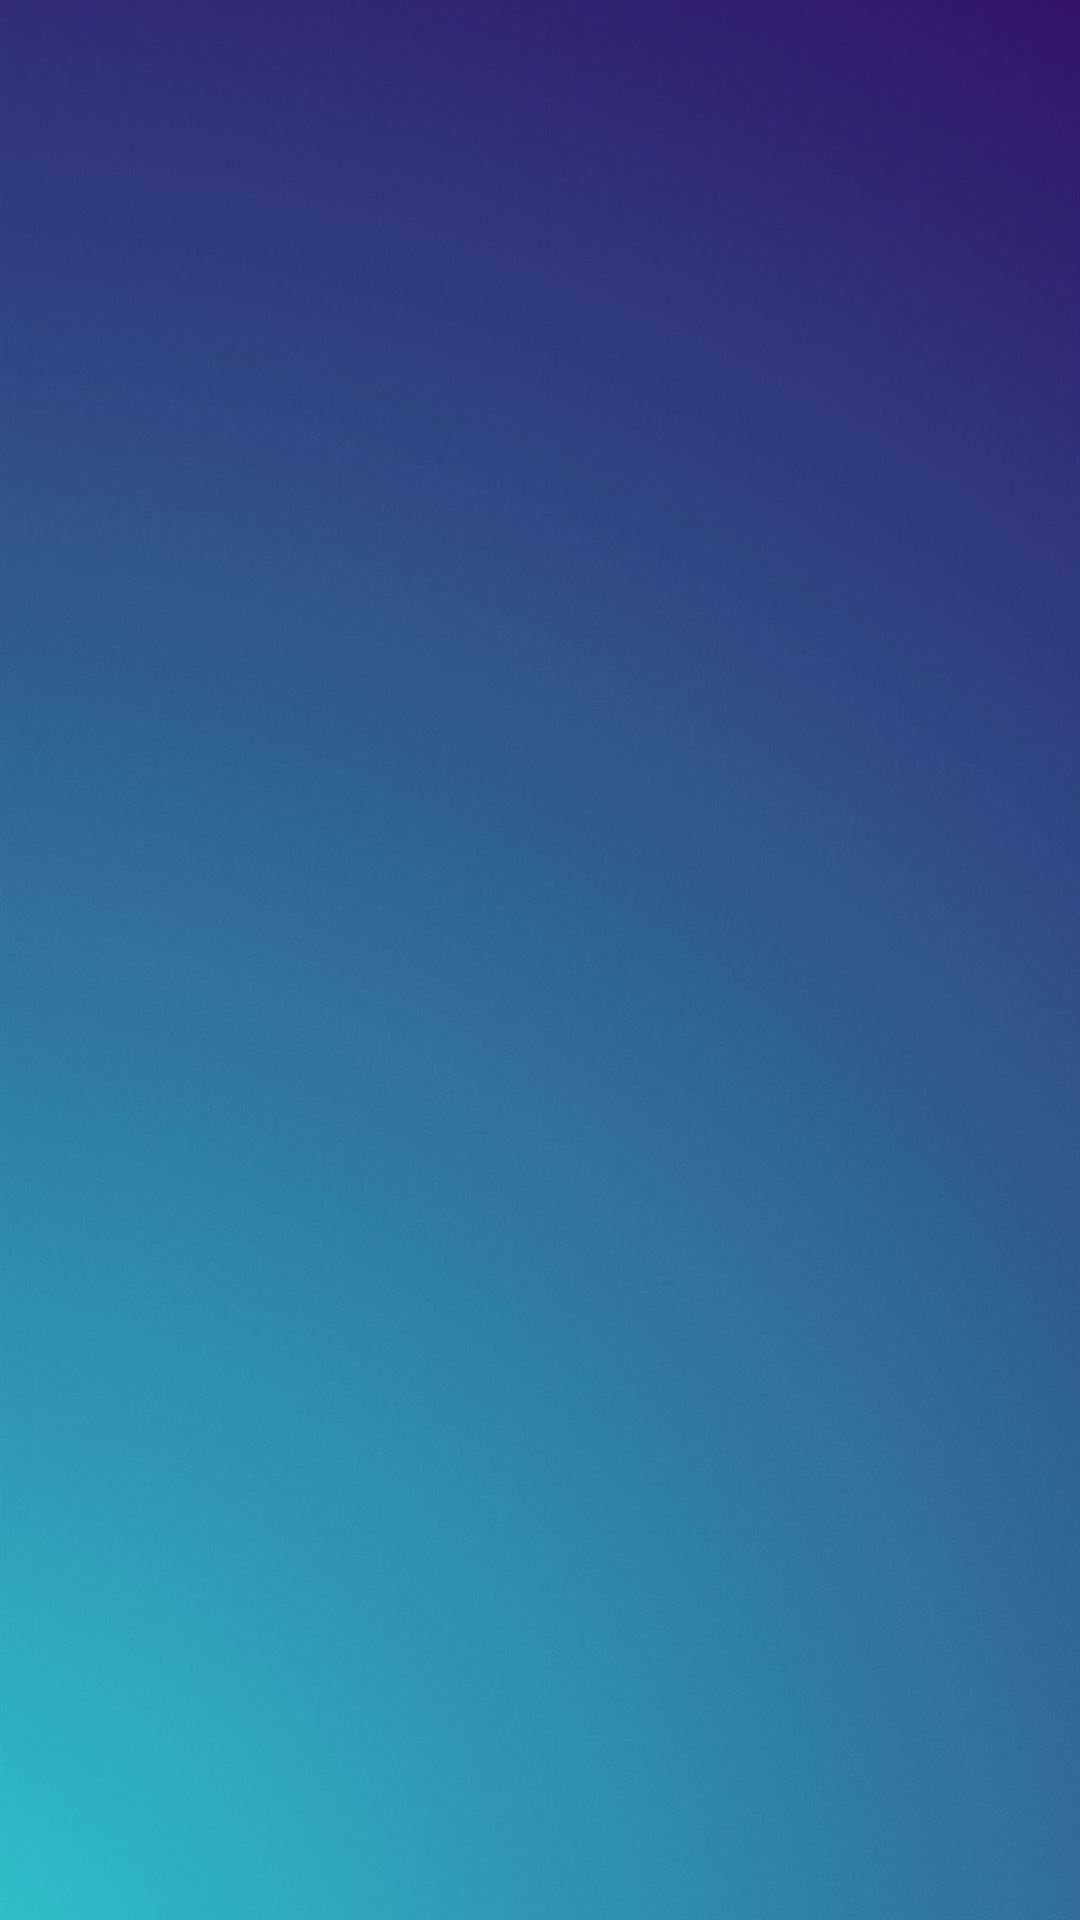 Hình nền Gradient từ màu xanh nhạt đến đậm mang đến cho chiếc iPhone của bạn sự độc đáo và đảm bảo nổi bật giữa người dùng iPhone khác. Nhấn vào hình ảnh liên quan để tận hưởng trọn vẹn vẻ đẹp của hình nền Gradient này.